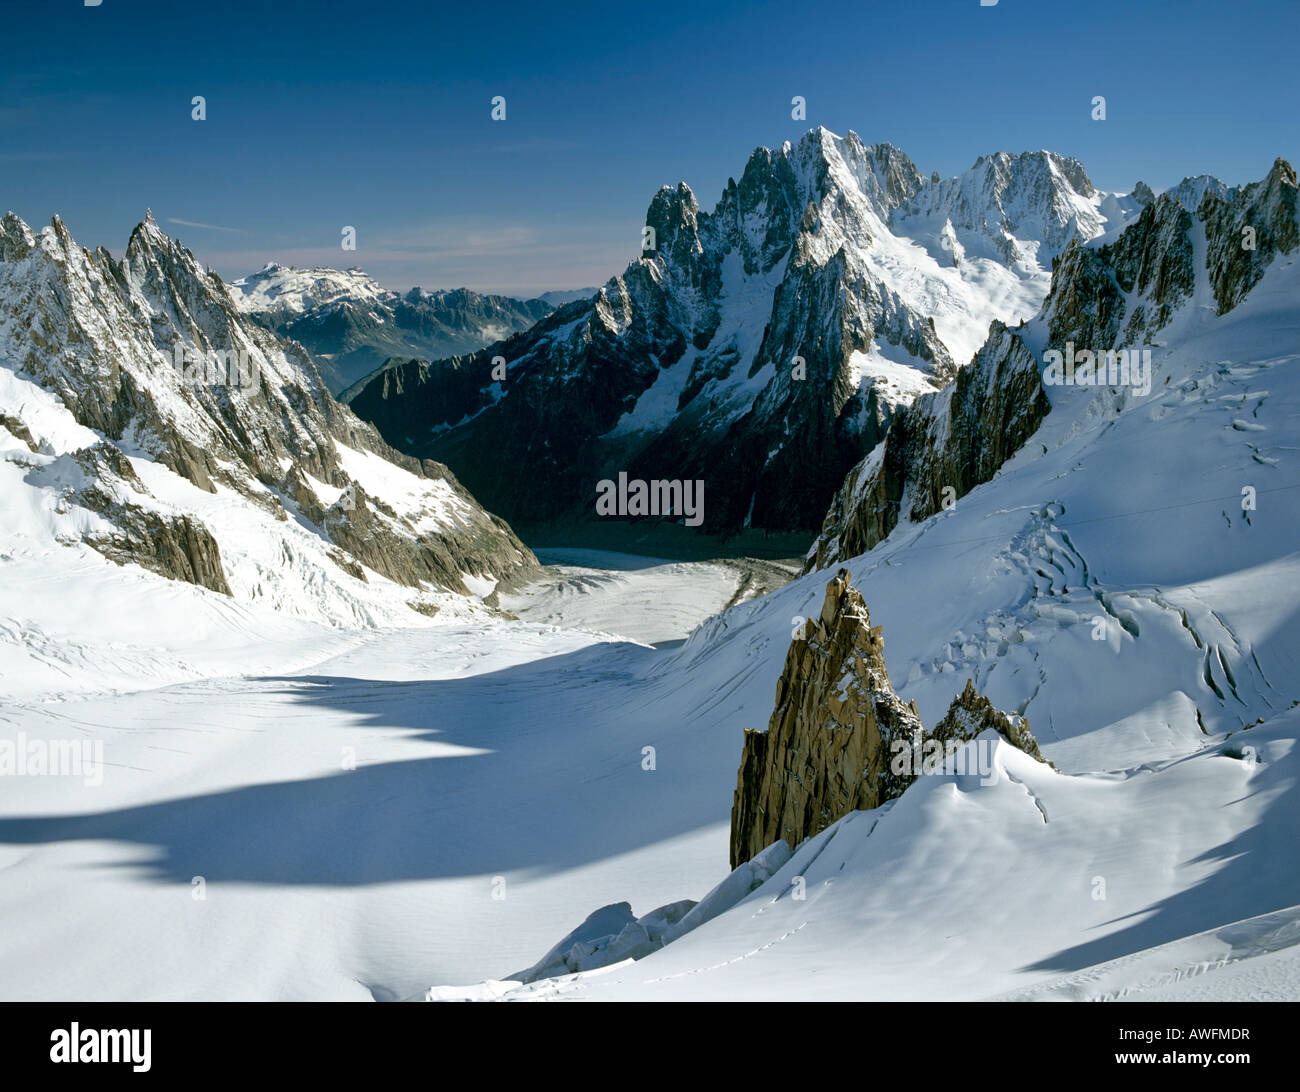 Mt. Aiguille Verte, Mer de Glace Glacier, Mont Blanc Group, Savoy Alps, Chamonix, France, Europe Stock Photo